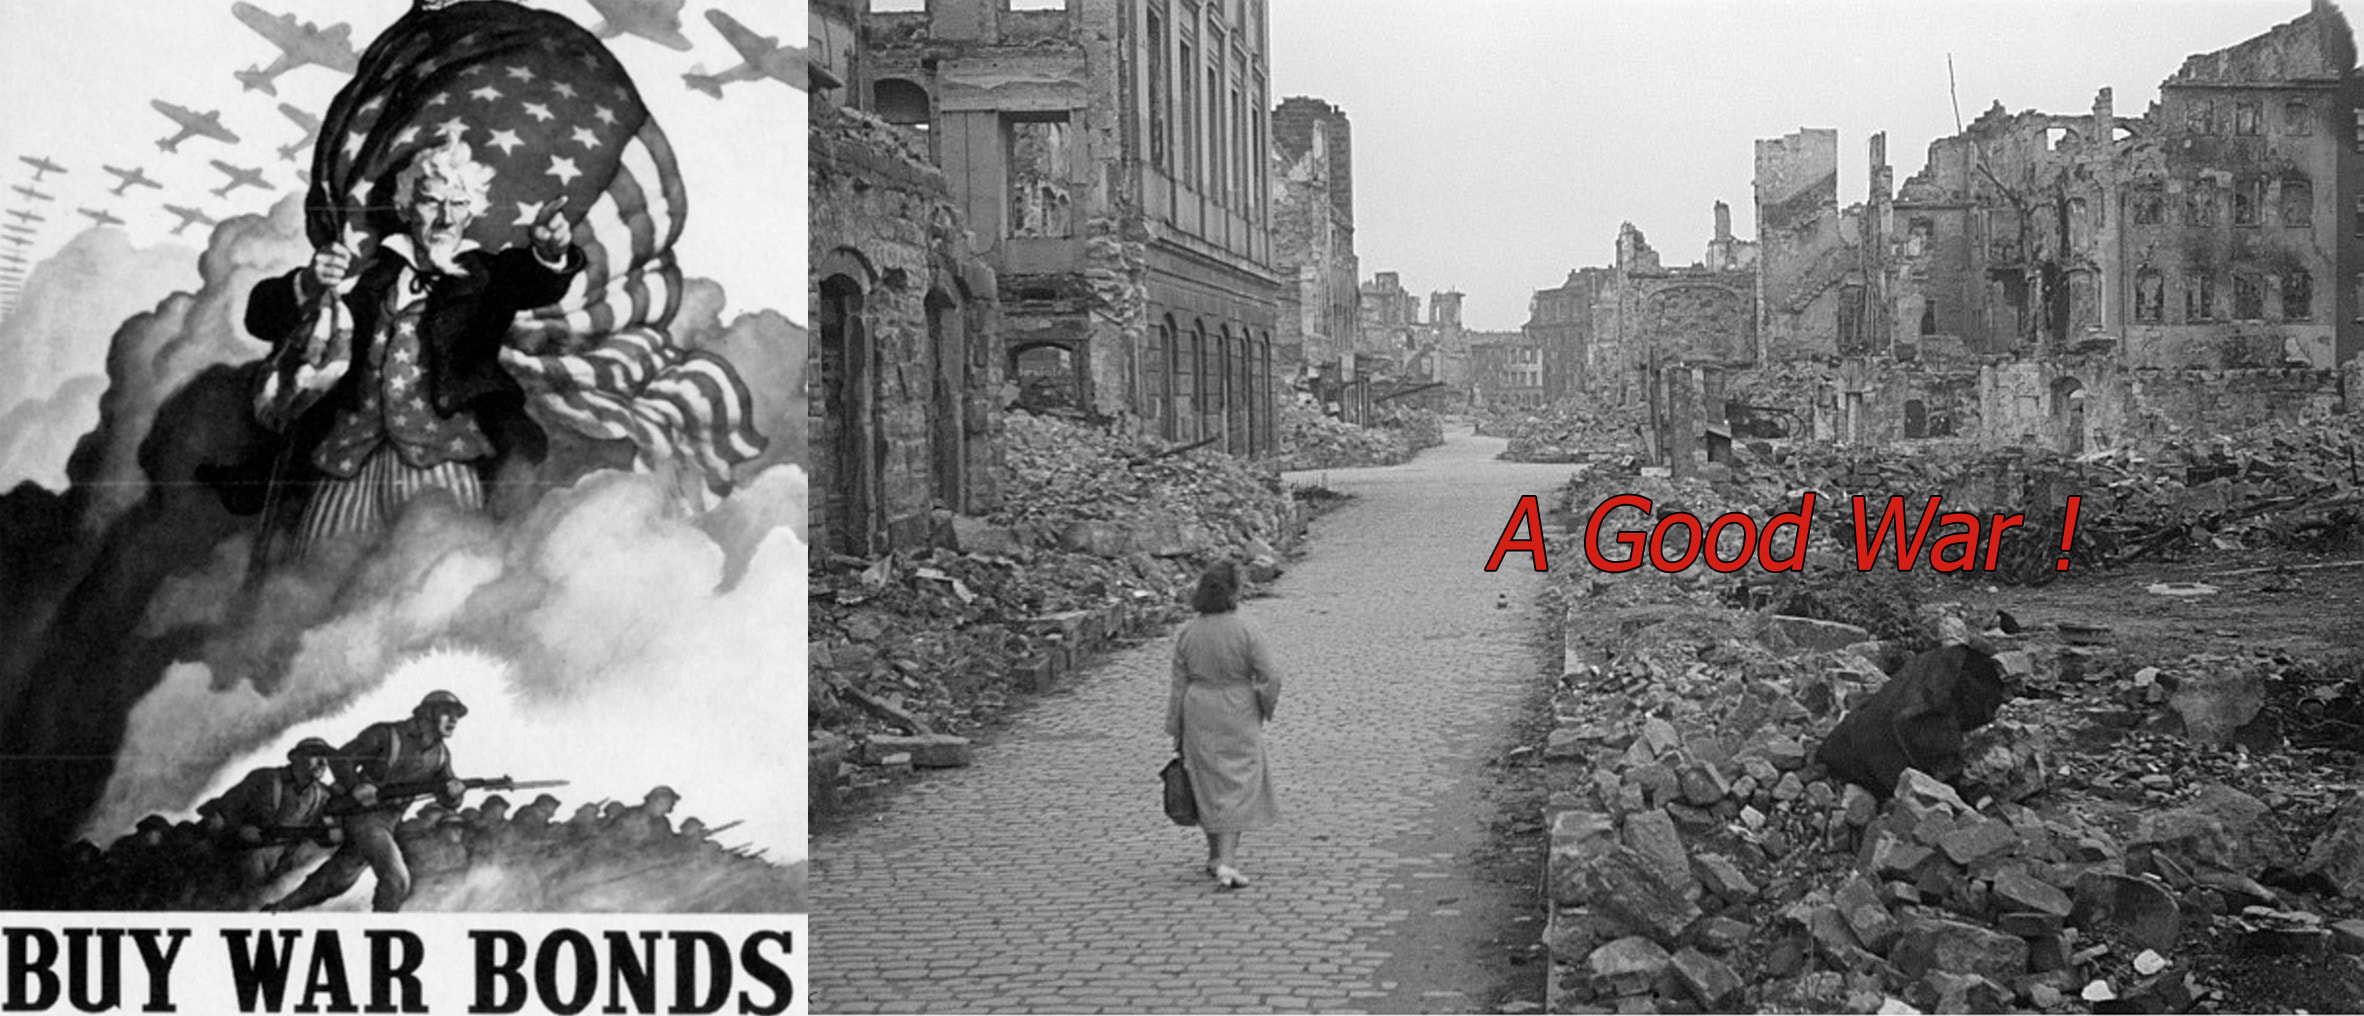 DVD Film documentaire "A Good War"